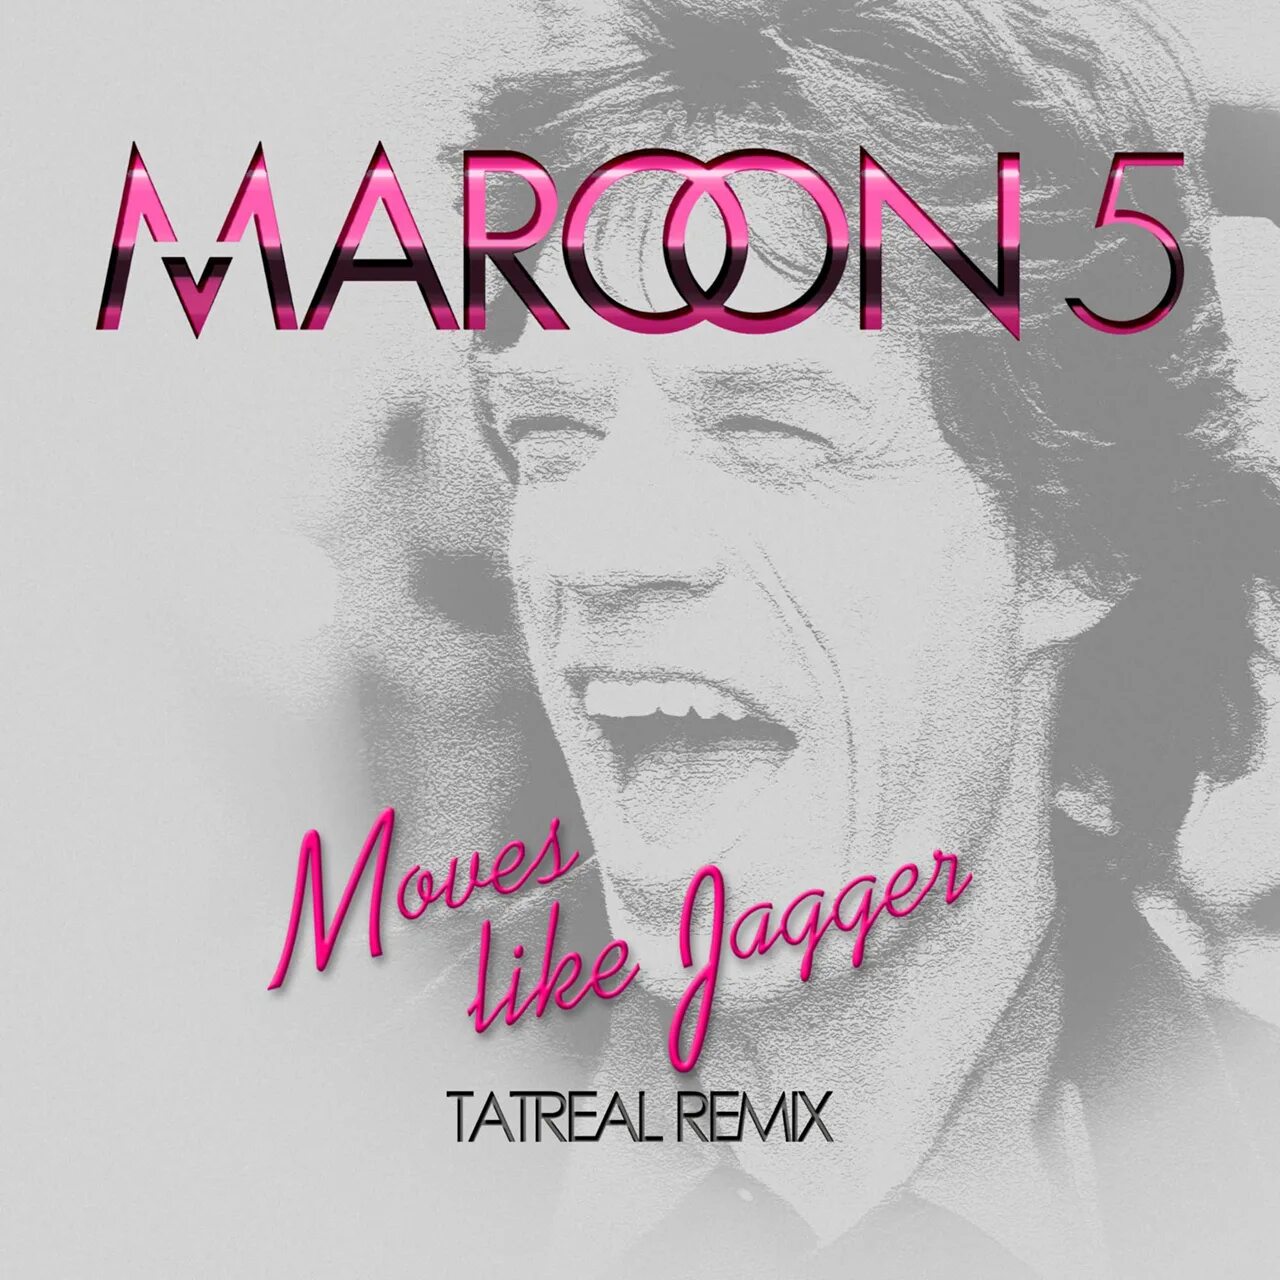 Лайк джаггер. Maroon 5 Джаггер. Марон 5 мув лайк Джаггер. Moves like Jagger Maroon. Moves like Jaggar.